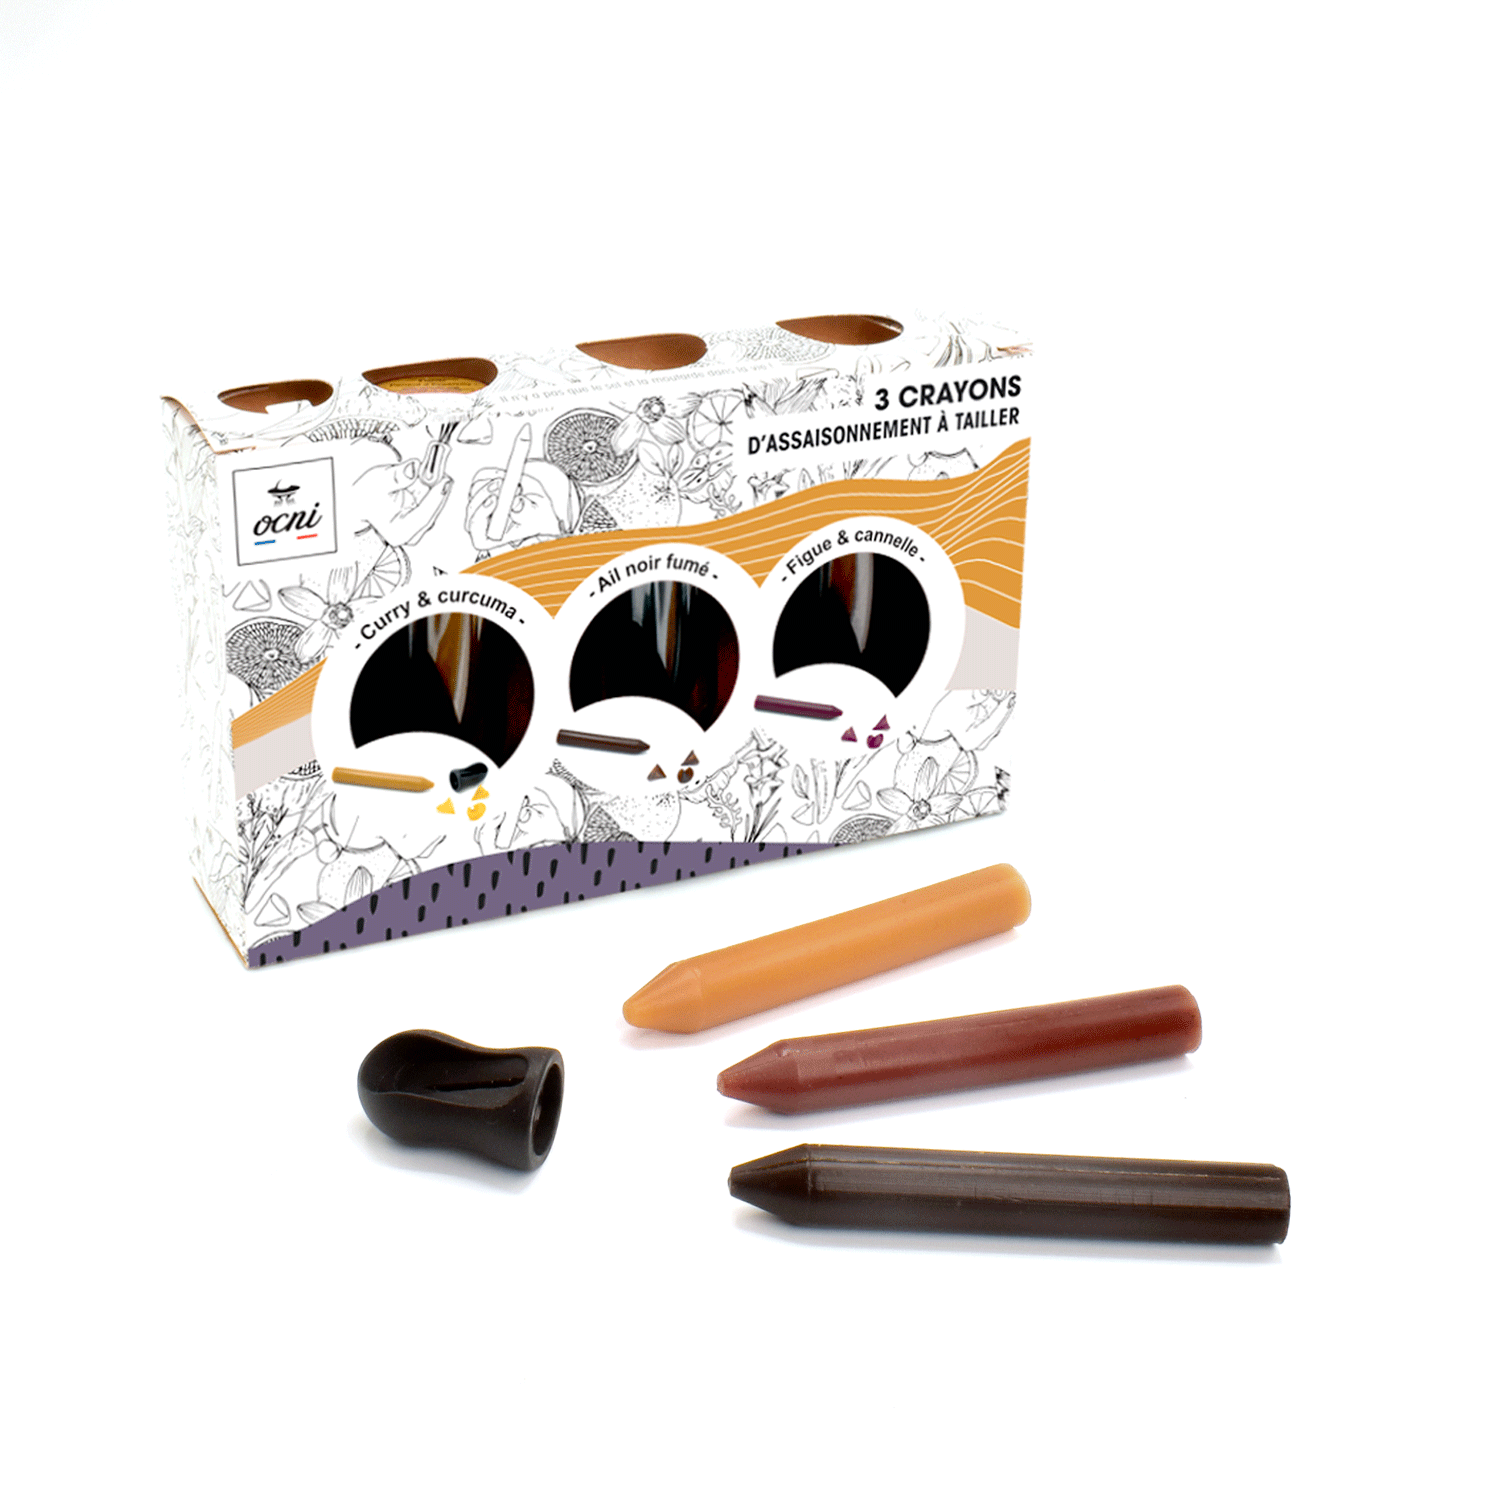 Le coffret des 3 crayons comestibles: Ail Noir Fumé, Figue Cannelle & Curry Curcuma